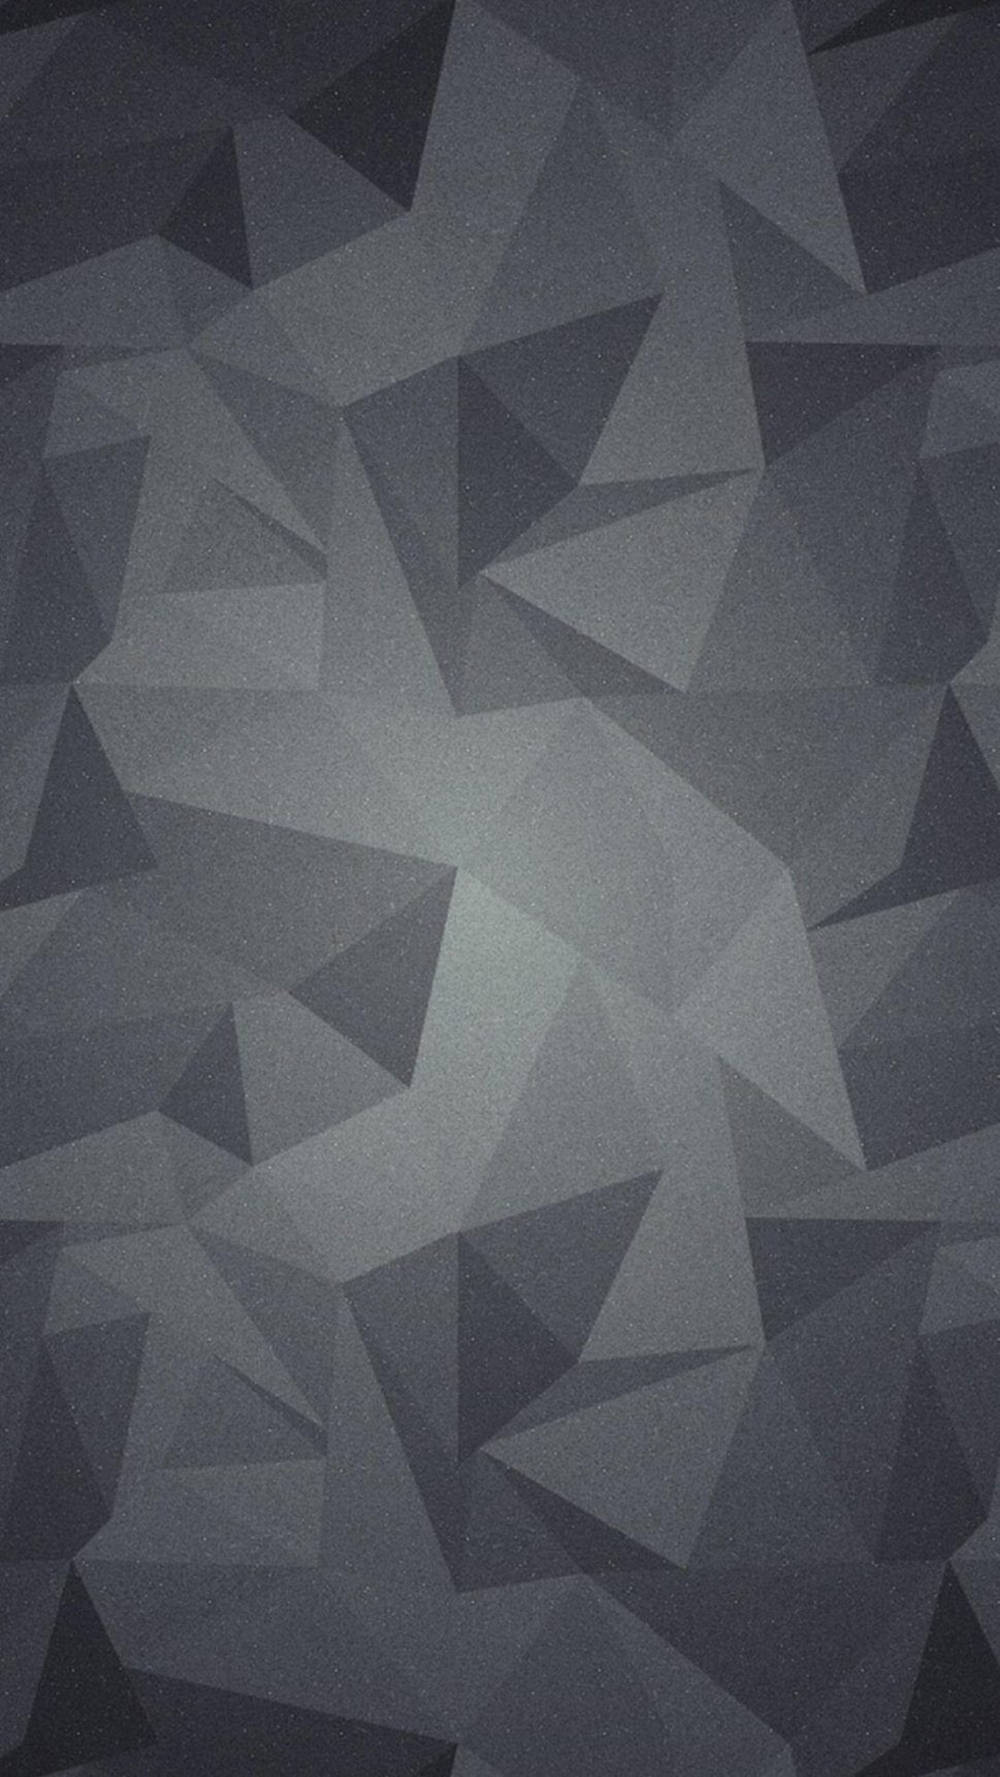 Triángulosabstractos En Tono Gris Para Iphone. Fondo de pantalla